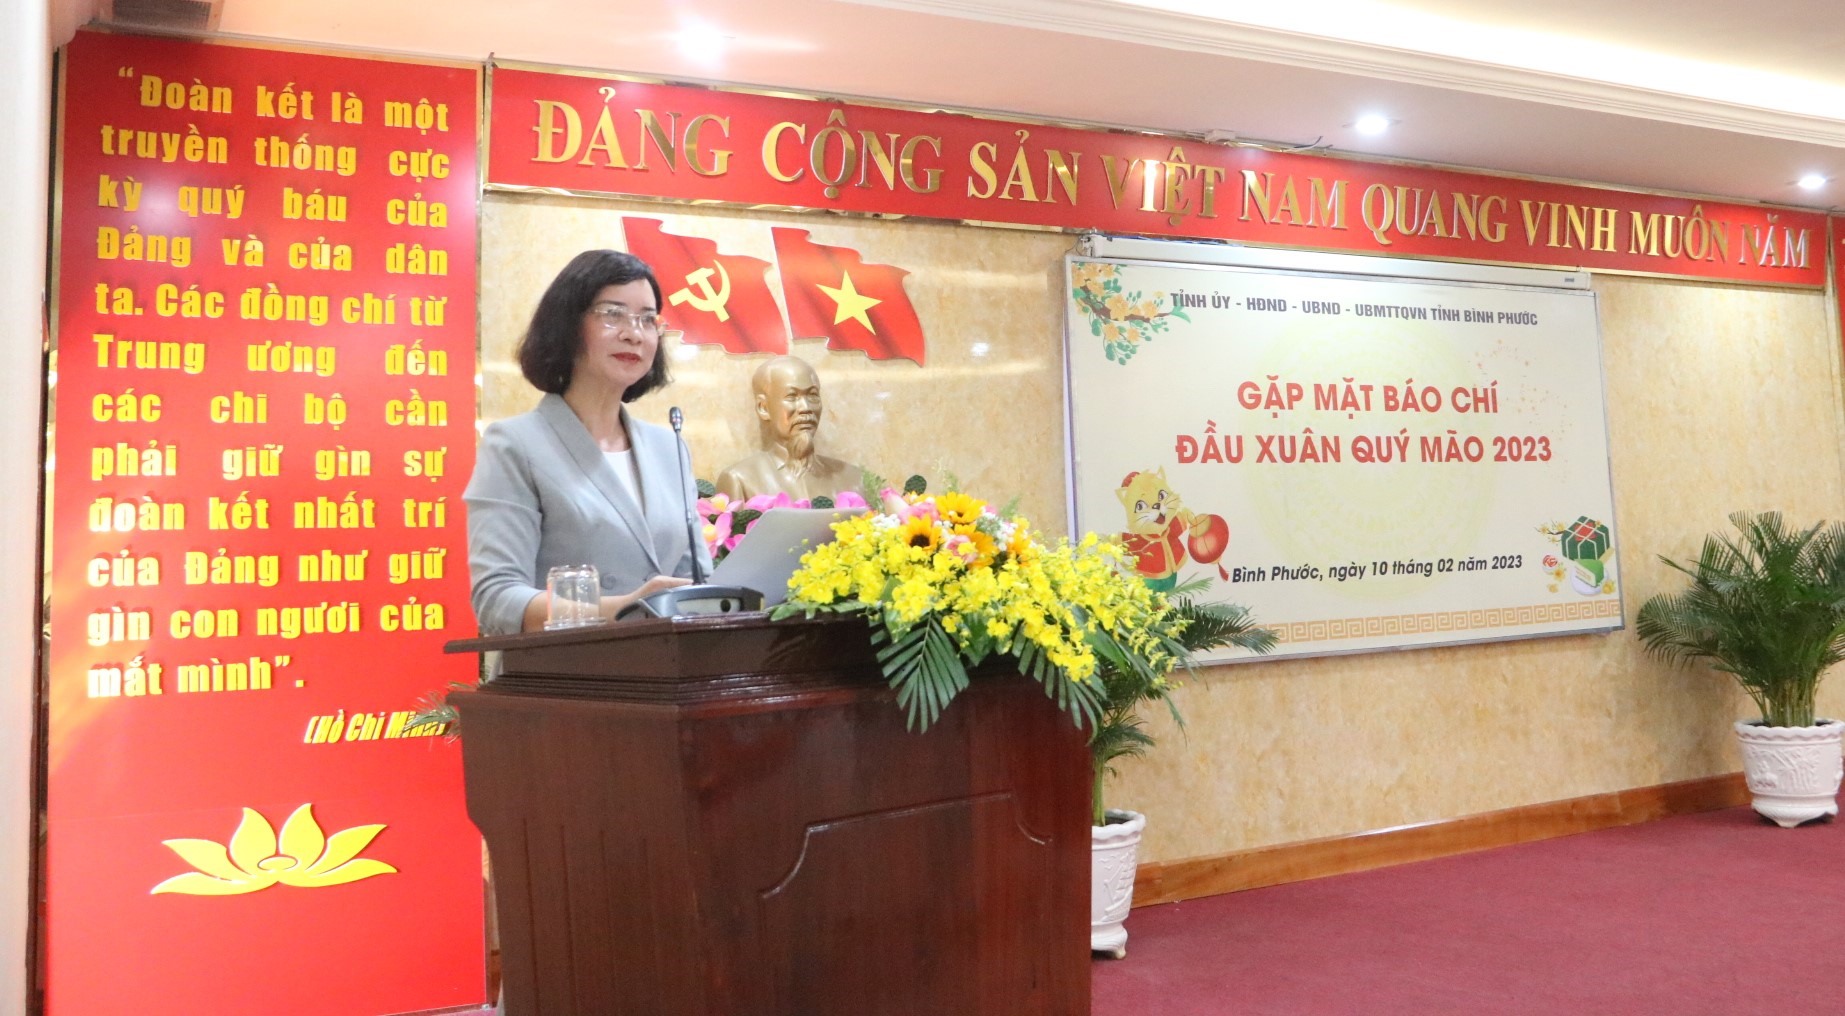 Bà Trần Tuyết Minh - Phó Chủ tịch UBND tỉnh Bình Phước phát biểu trong buổi gặp mặt báo chí.Ảnh: Đình Trọng